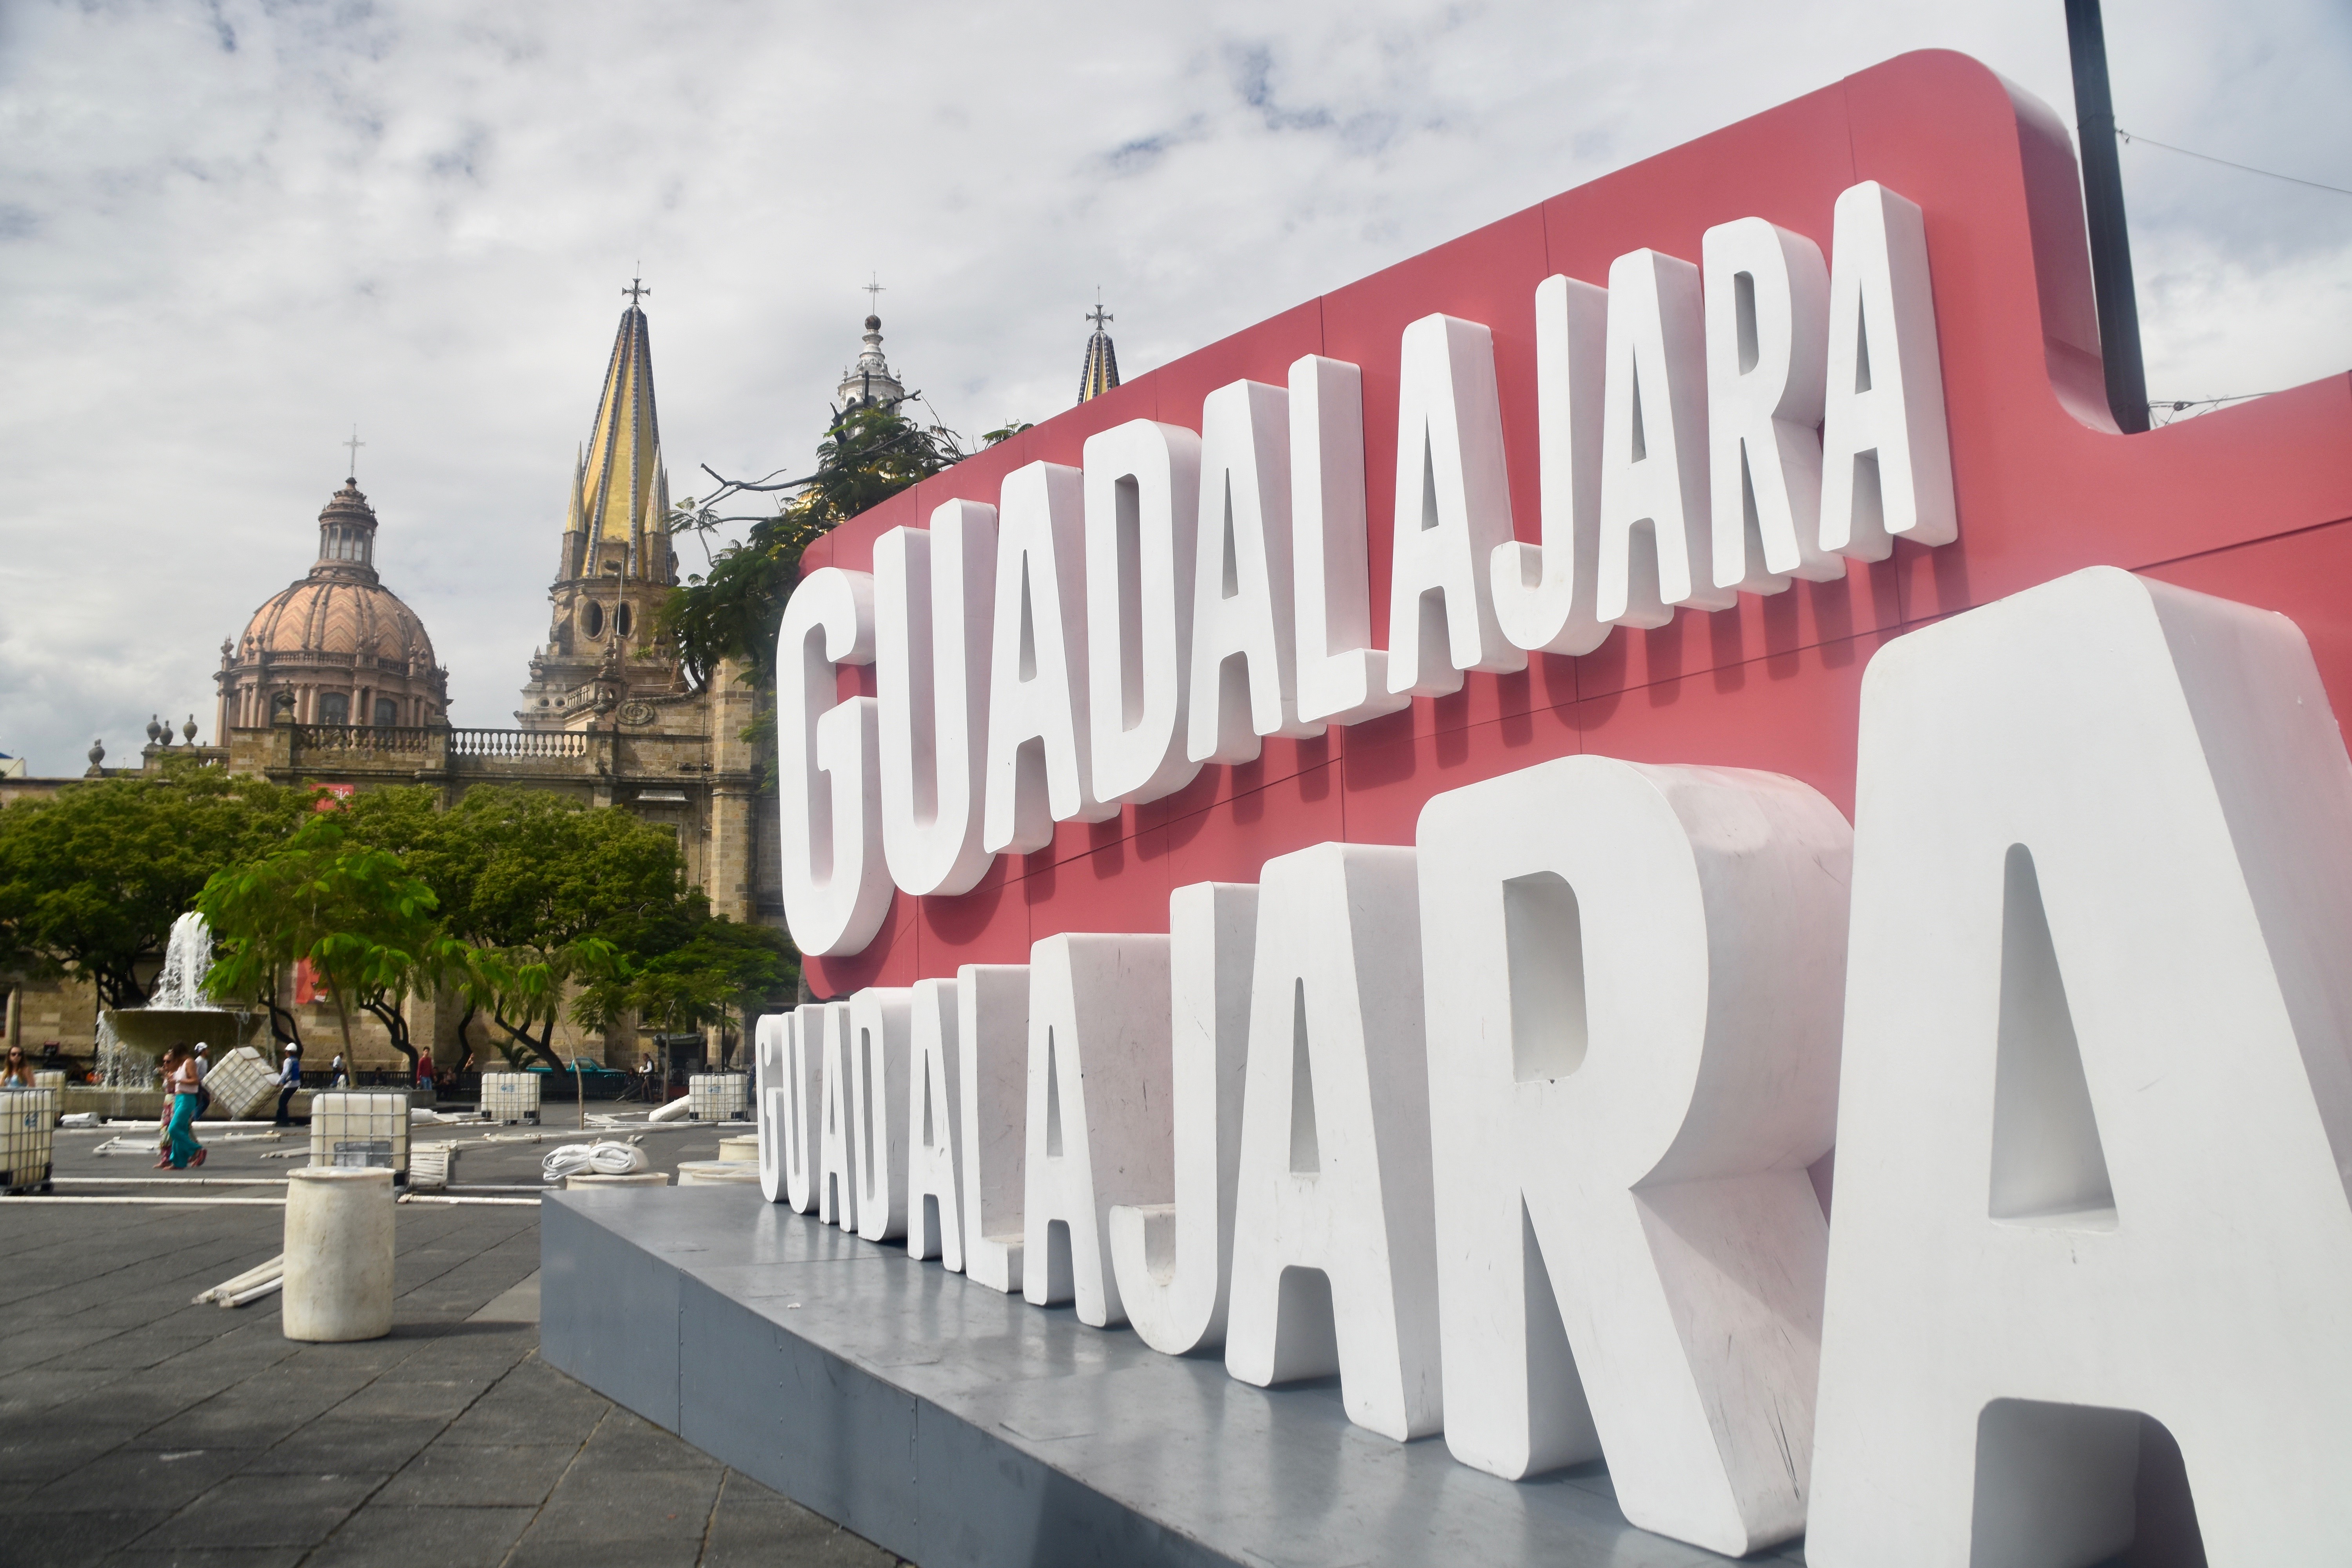 In Guadalajara